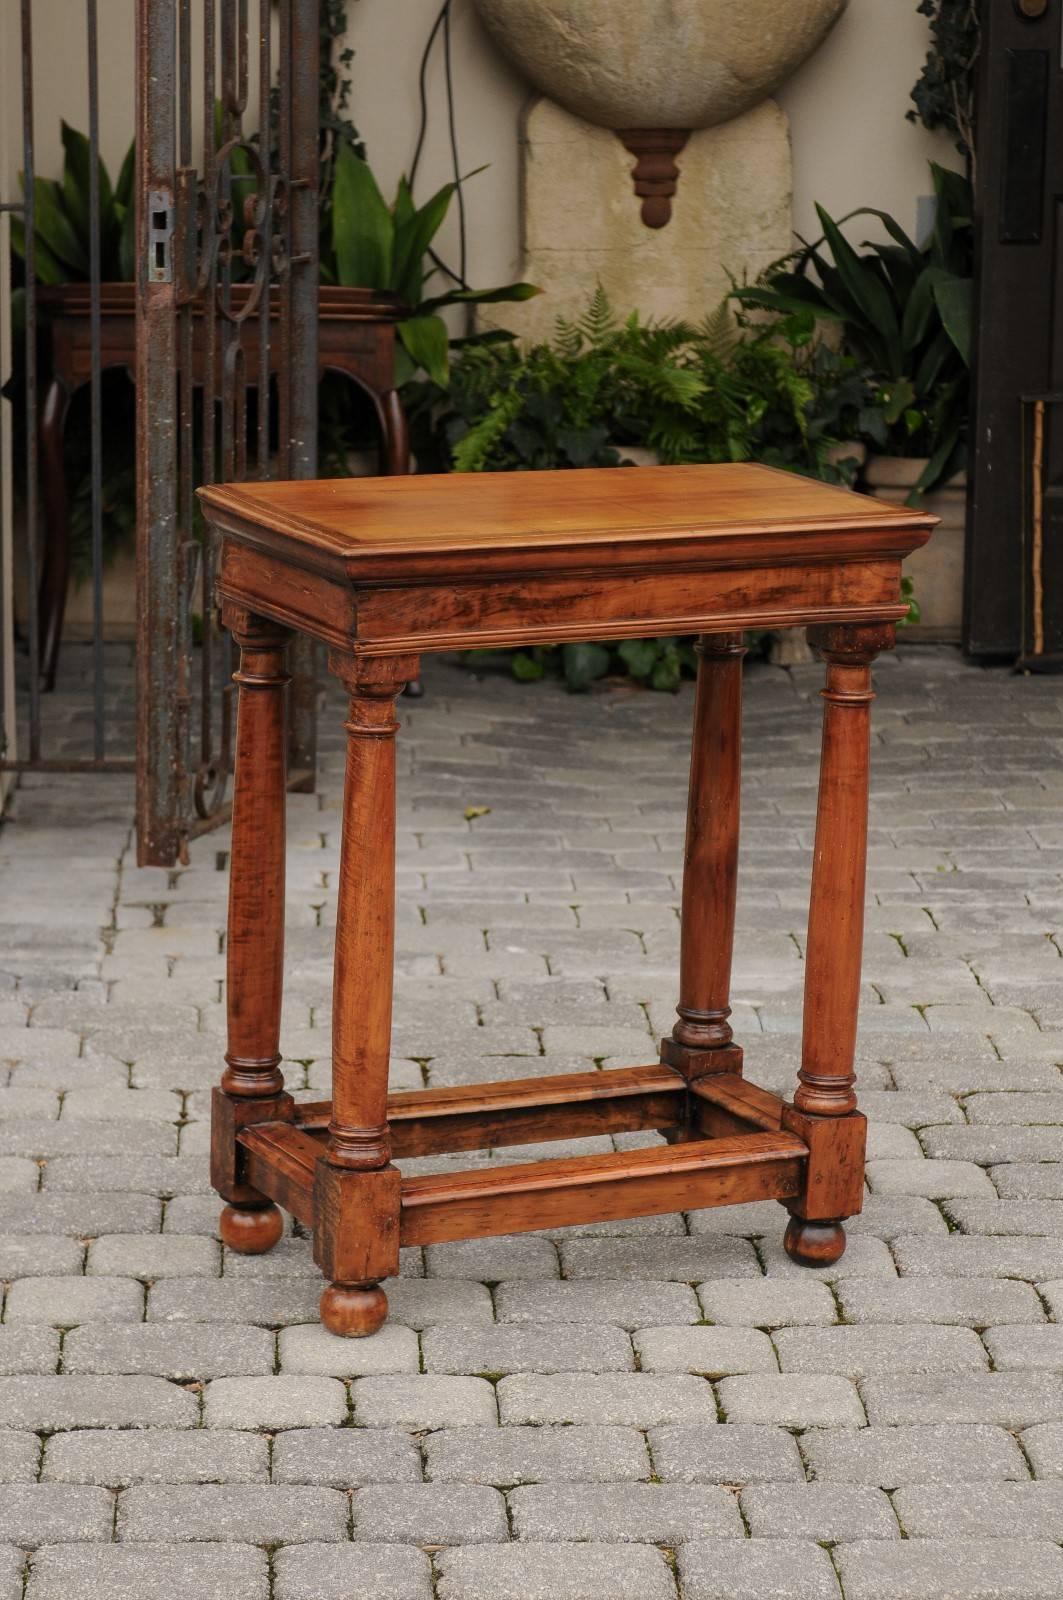 Cette exquise table d'appoint en bois fruitier de style Empire français du milieu du siècle présente un plateau rectangulaire soutenu par quatre colonnes en bois de style dorique, avec un renflement caractéristique de l'entasis, une forme légèrement